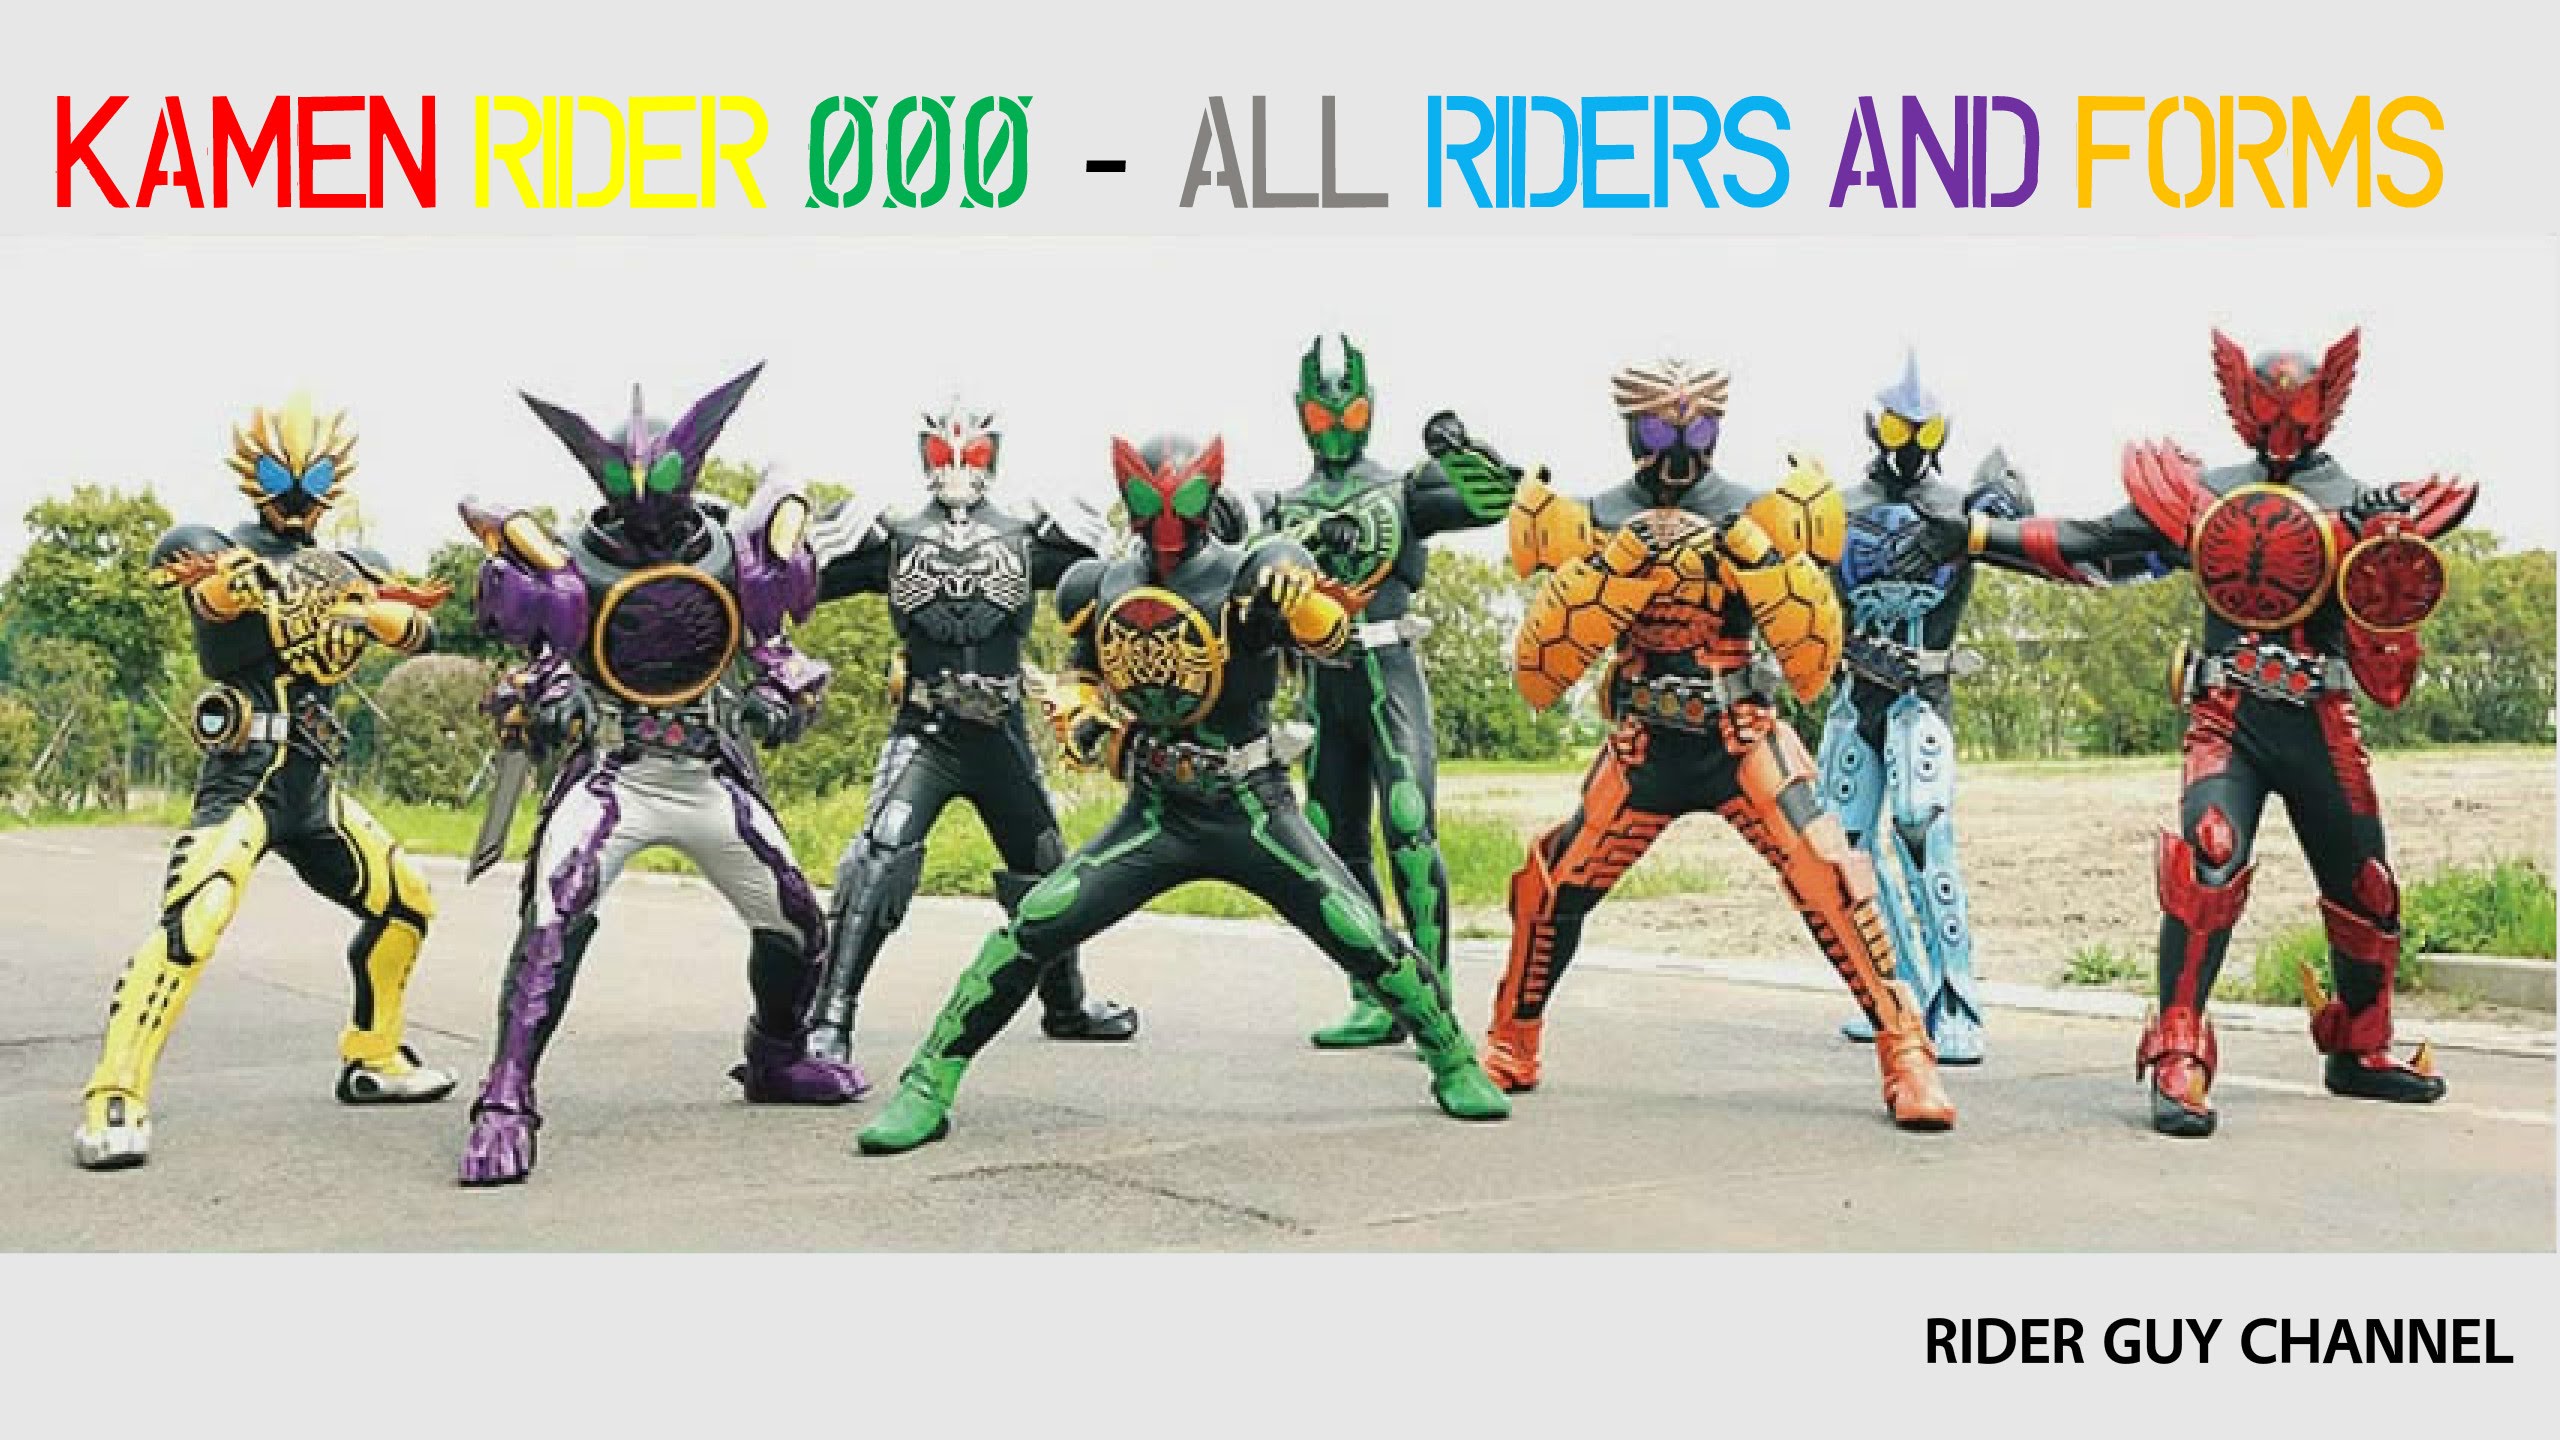 High Resolution Wallpaper | Kamen Rider Ooo 2560x1440 px